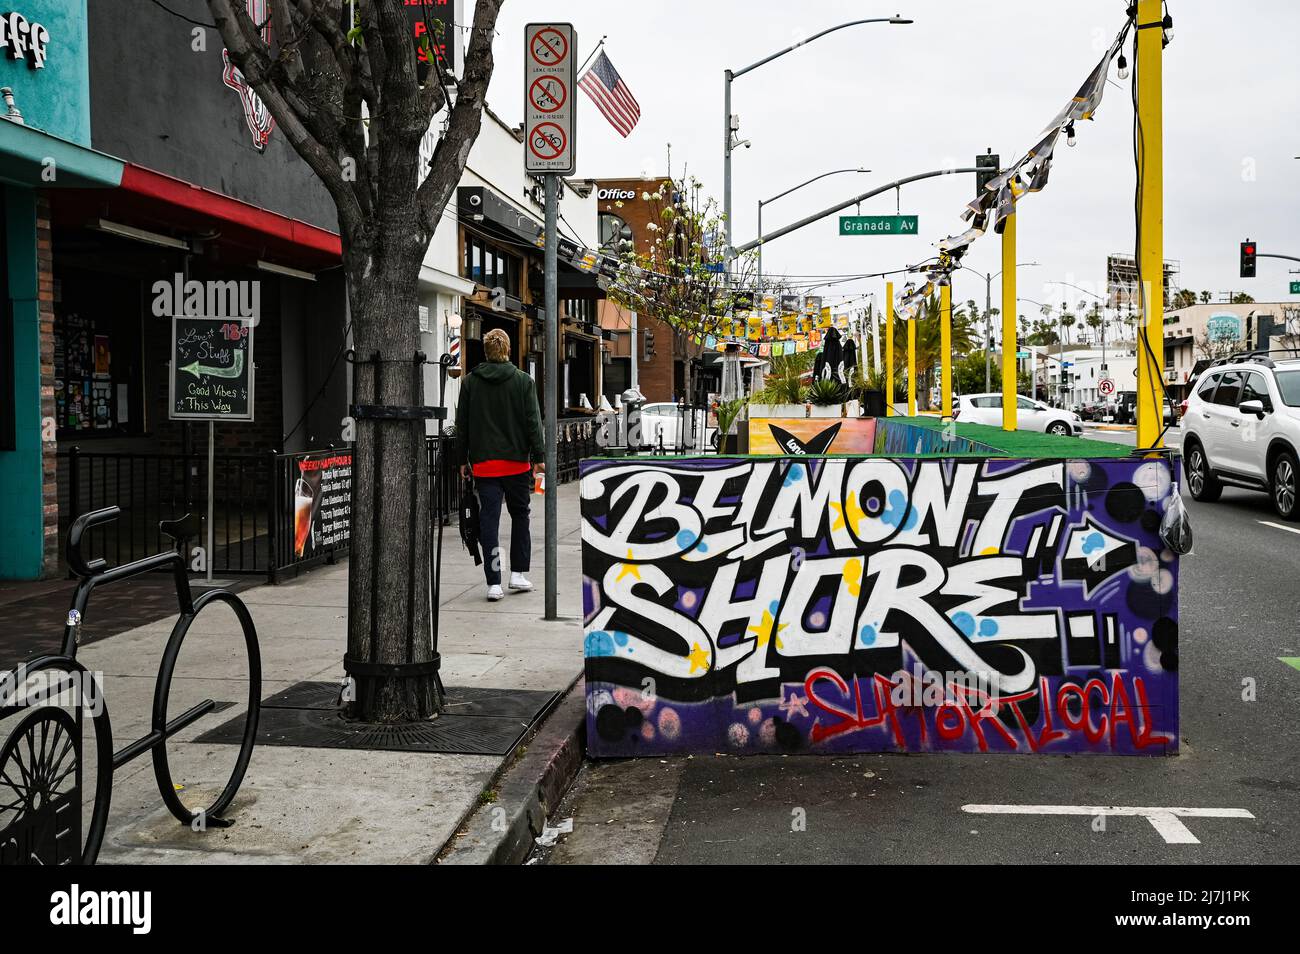 Foto eines lokalen Belmont Shore-Schildes an der zweiten Straße, dem beliebten Einkaufsviertel im gehobenen Strandviertel. Stockfoto